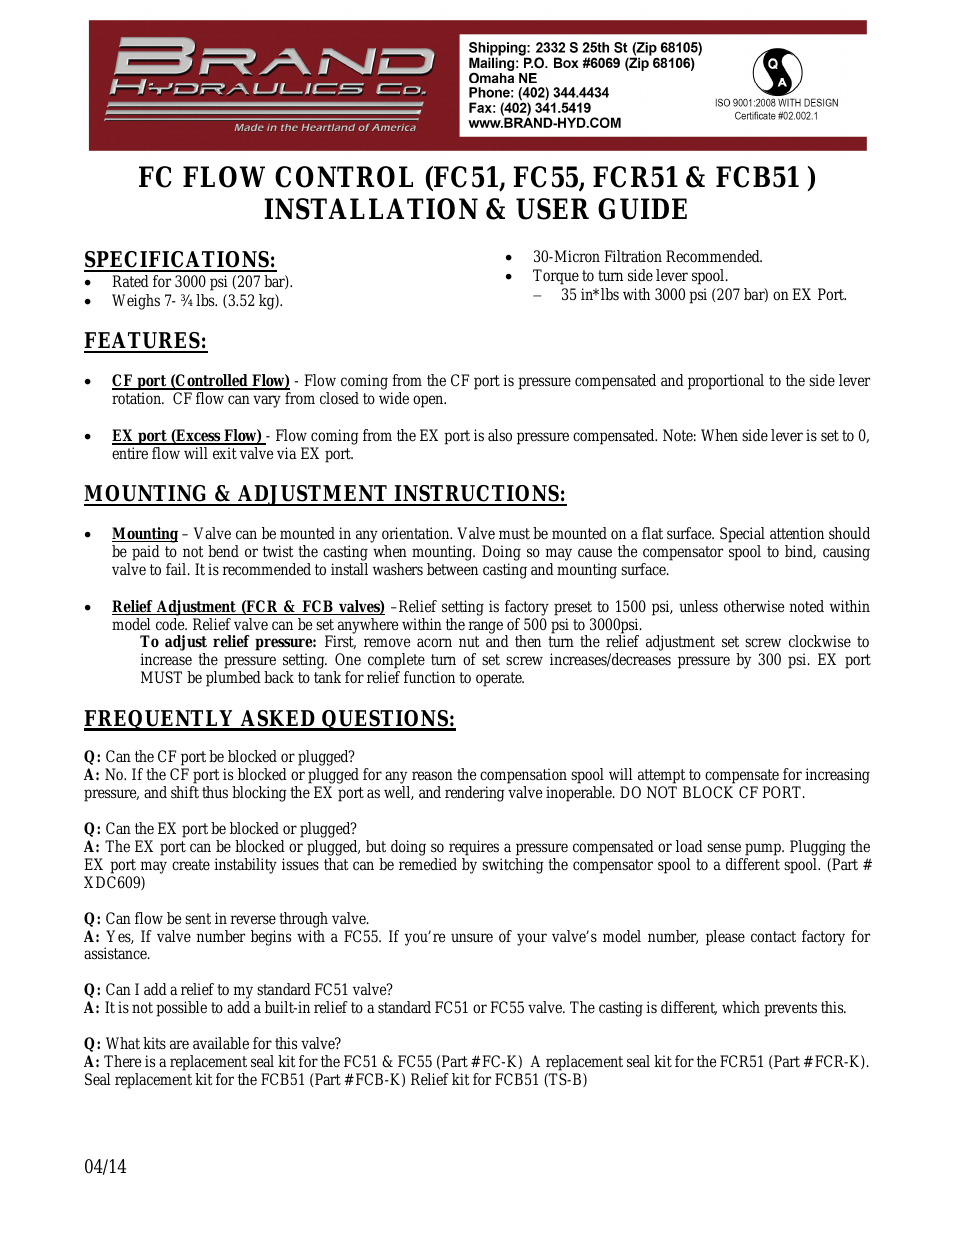 FC FLOW CONTROL (FC51, FC55, FCR51 & FCB51)